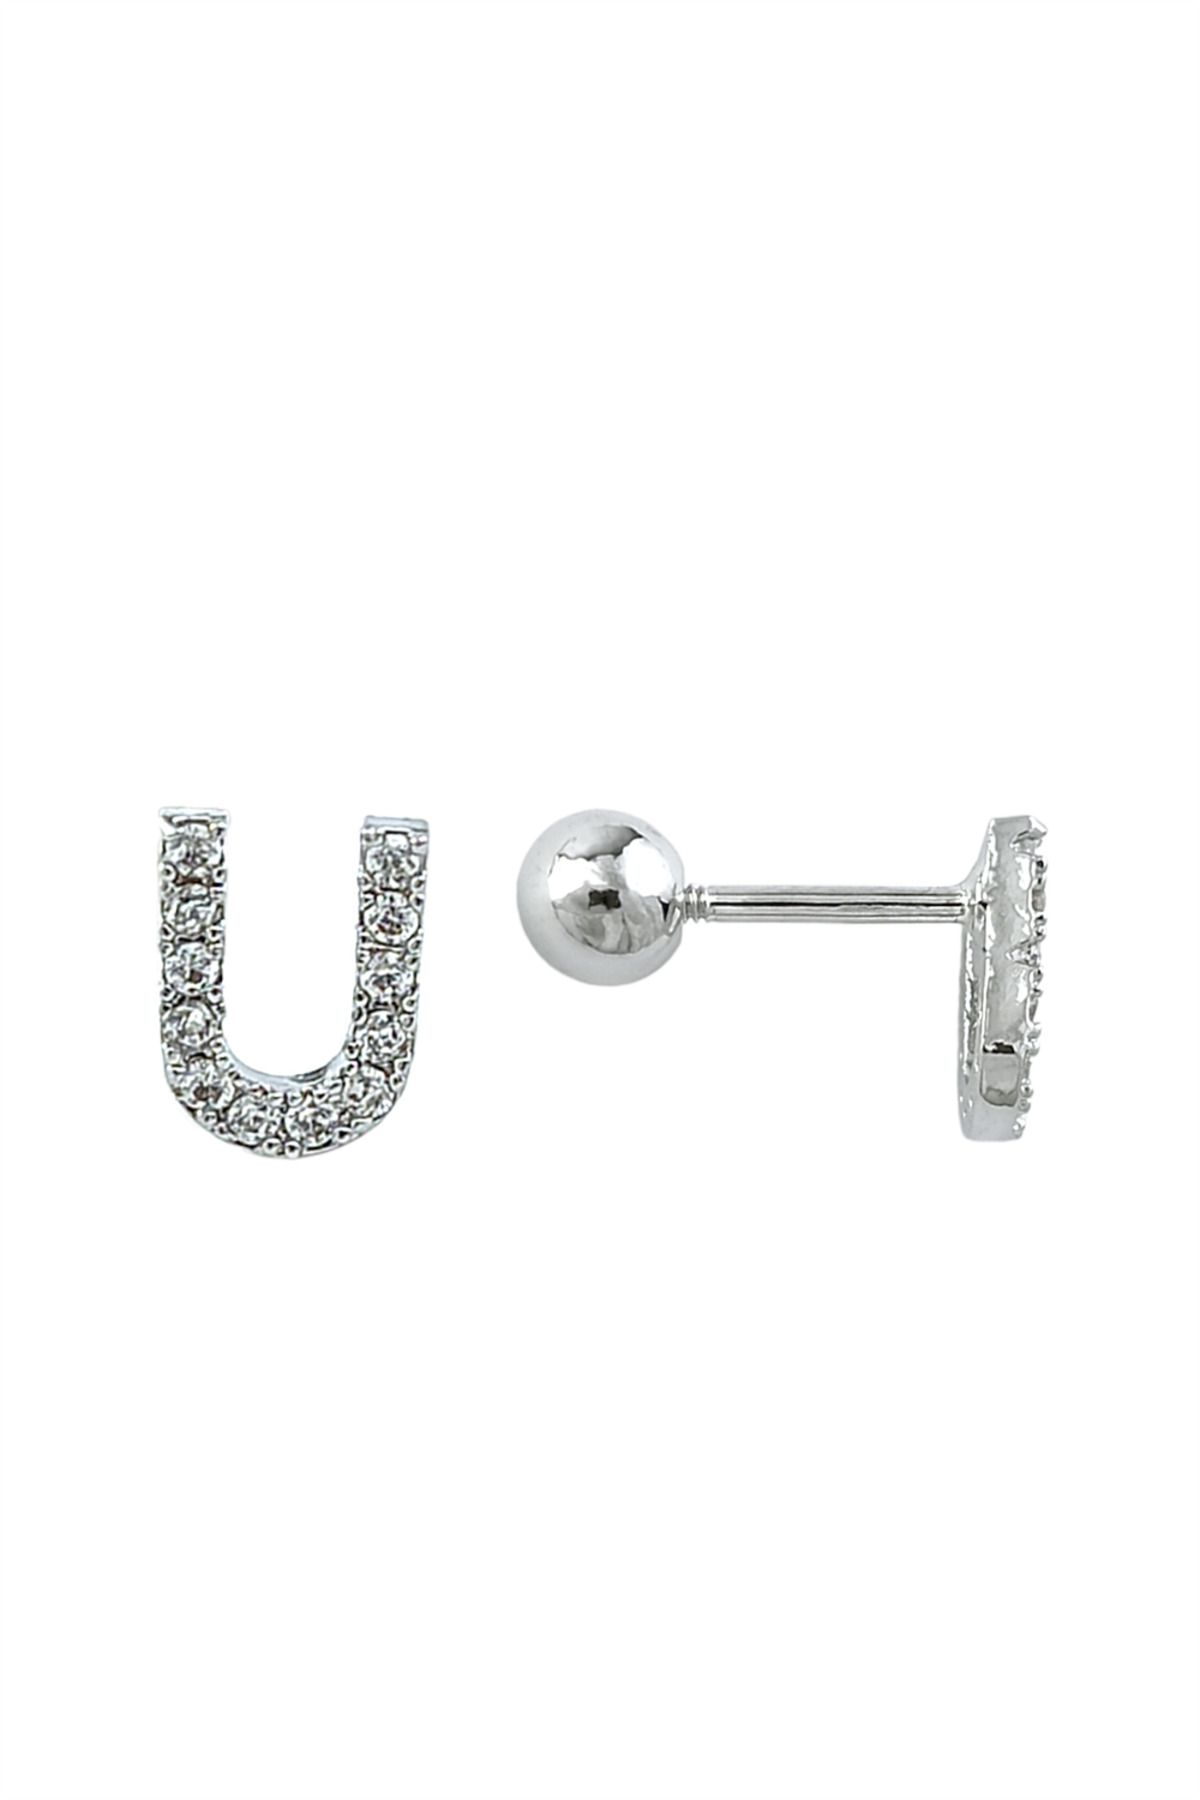 Çlk Accessories Gümüş Renk Harf Piercing - U HarfPiercing